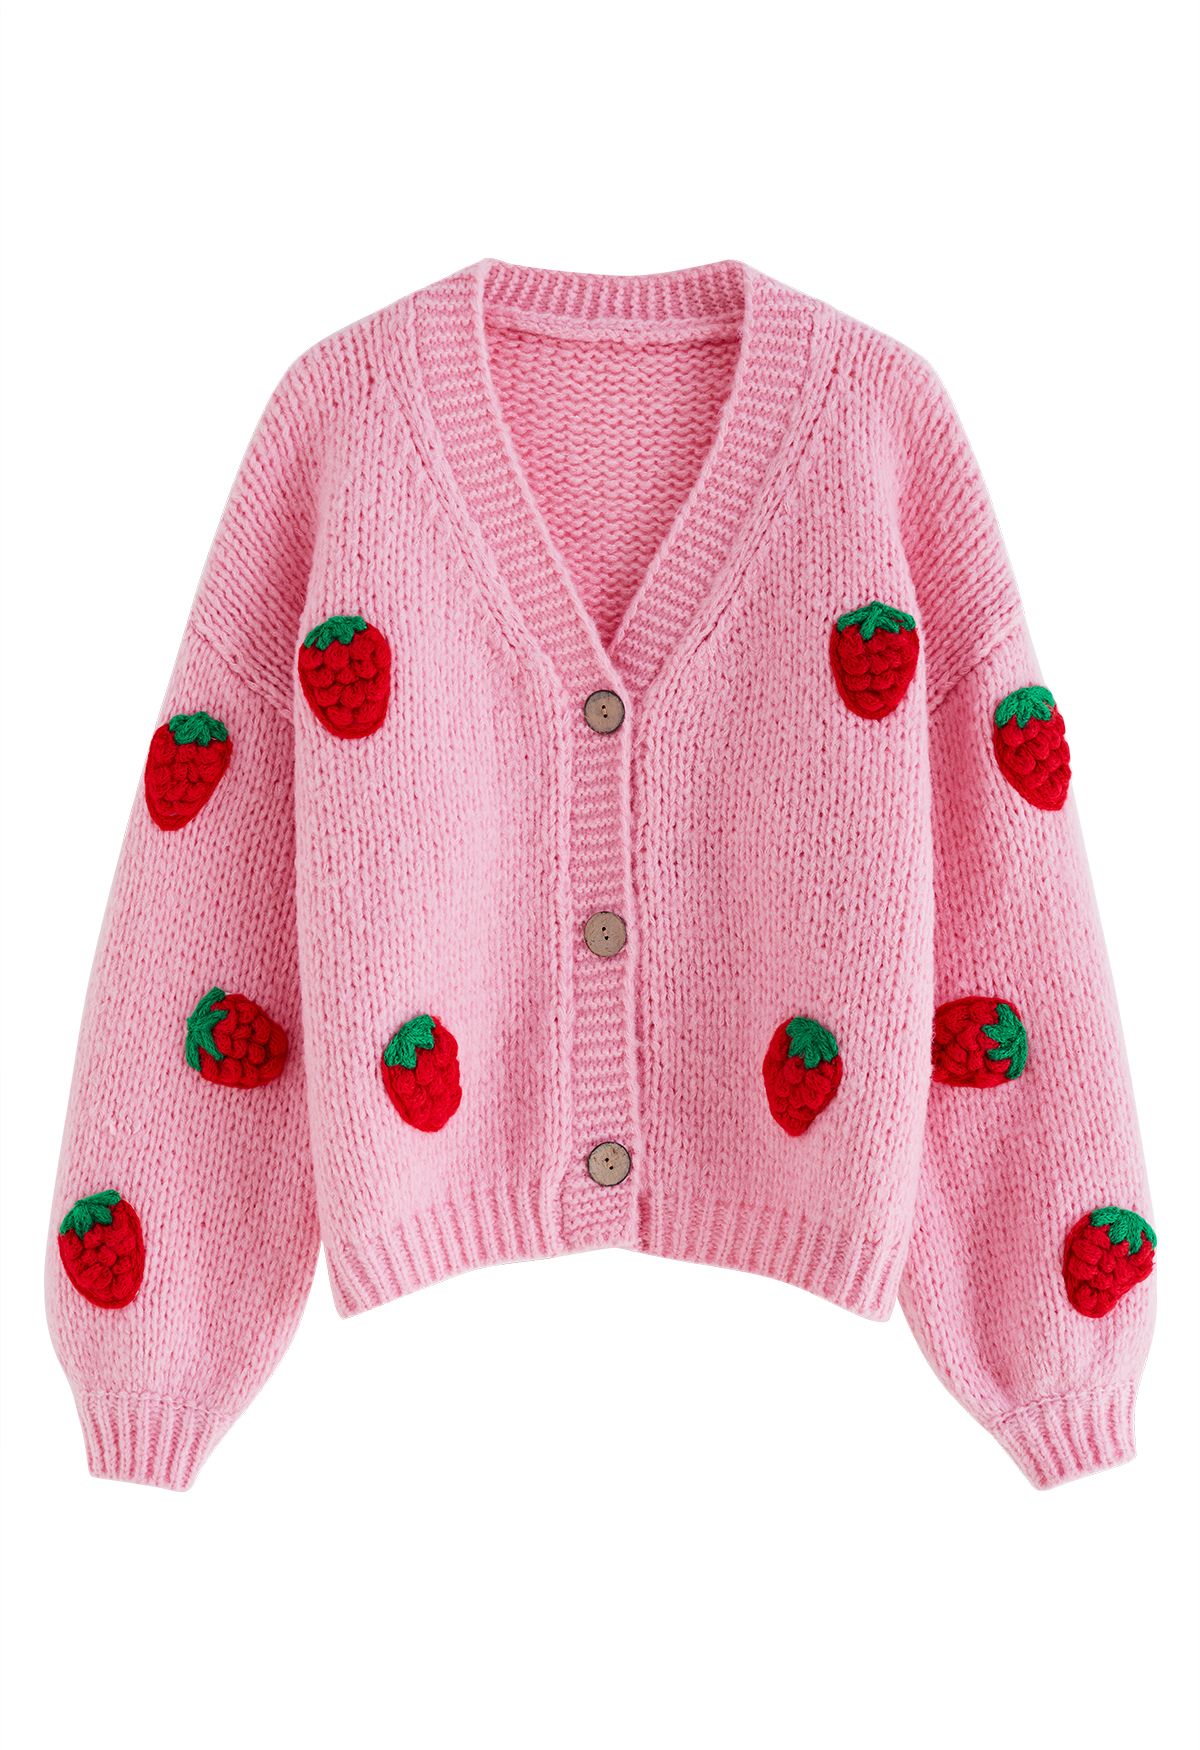 Stitch Strawberry Button Up Handgestrickte Strickjacke in Bonbonrosa